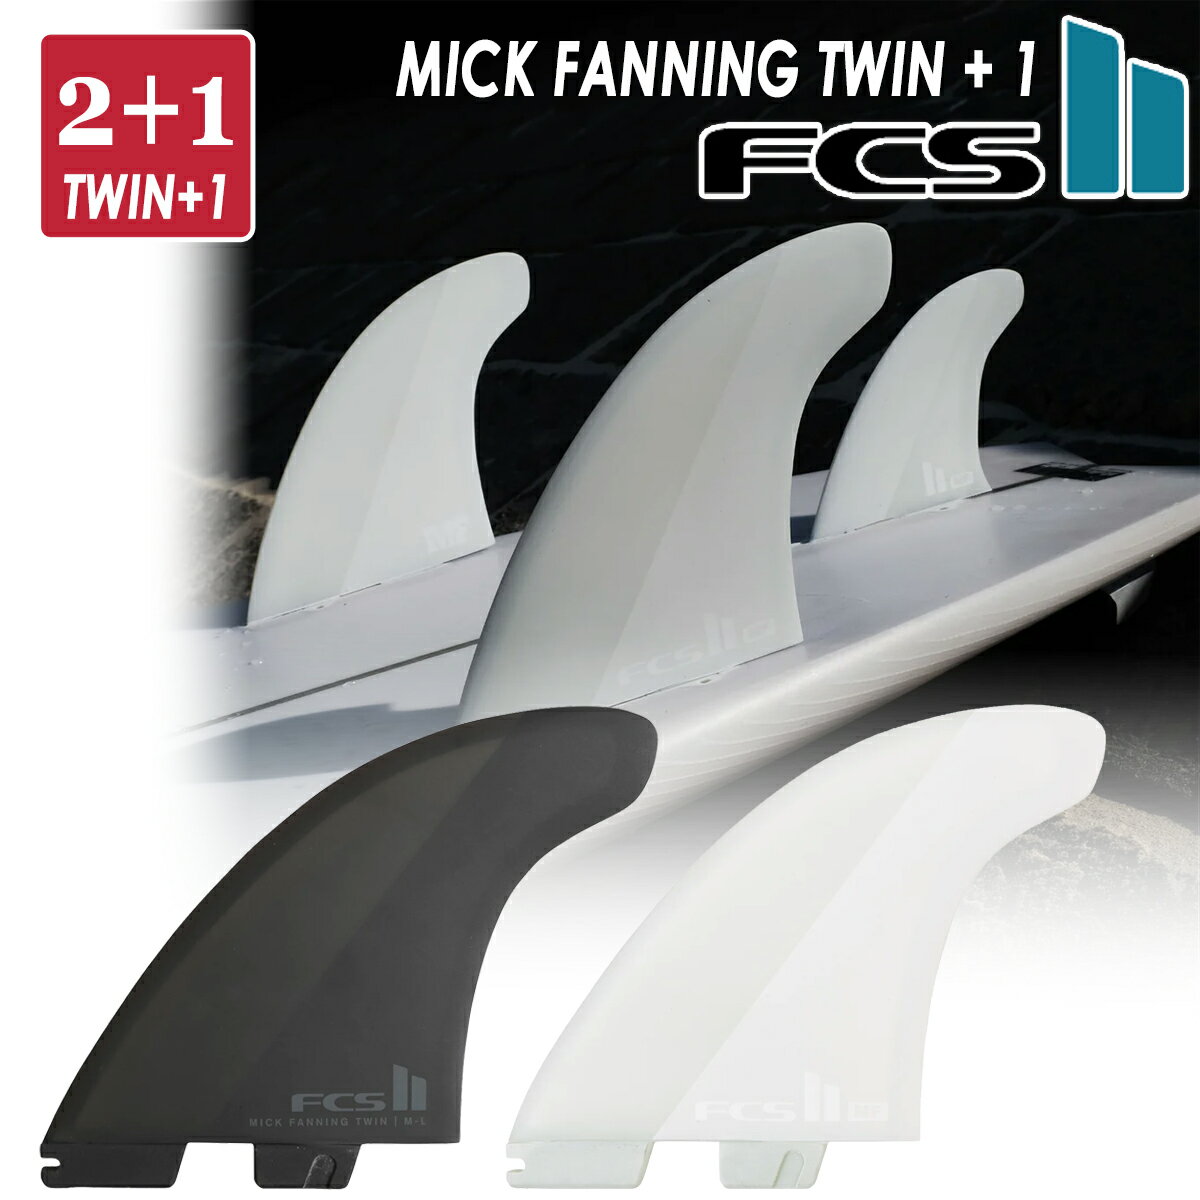 24 FCS2 フィン MF TWIN +1 PC ミックファニング ツイン エアコア 2+1 パフォーマンスコア スタビライザー 3本セット 3フィン 3fin MICK FANNING AirCore STABILISER サーフィン サーフボード …